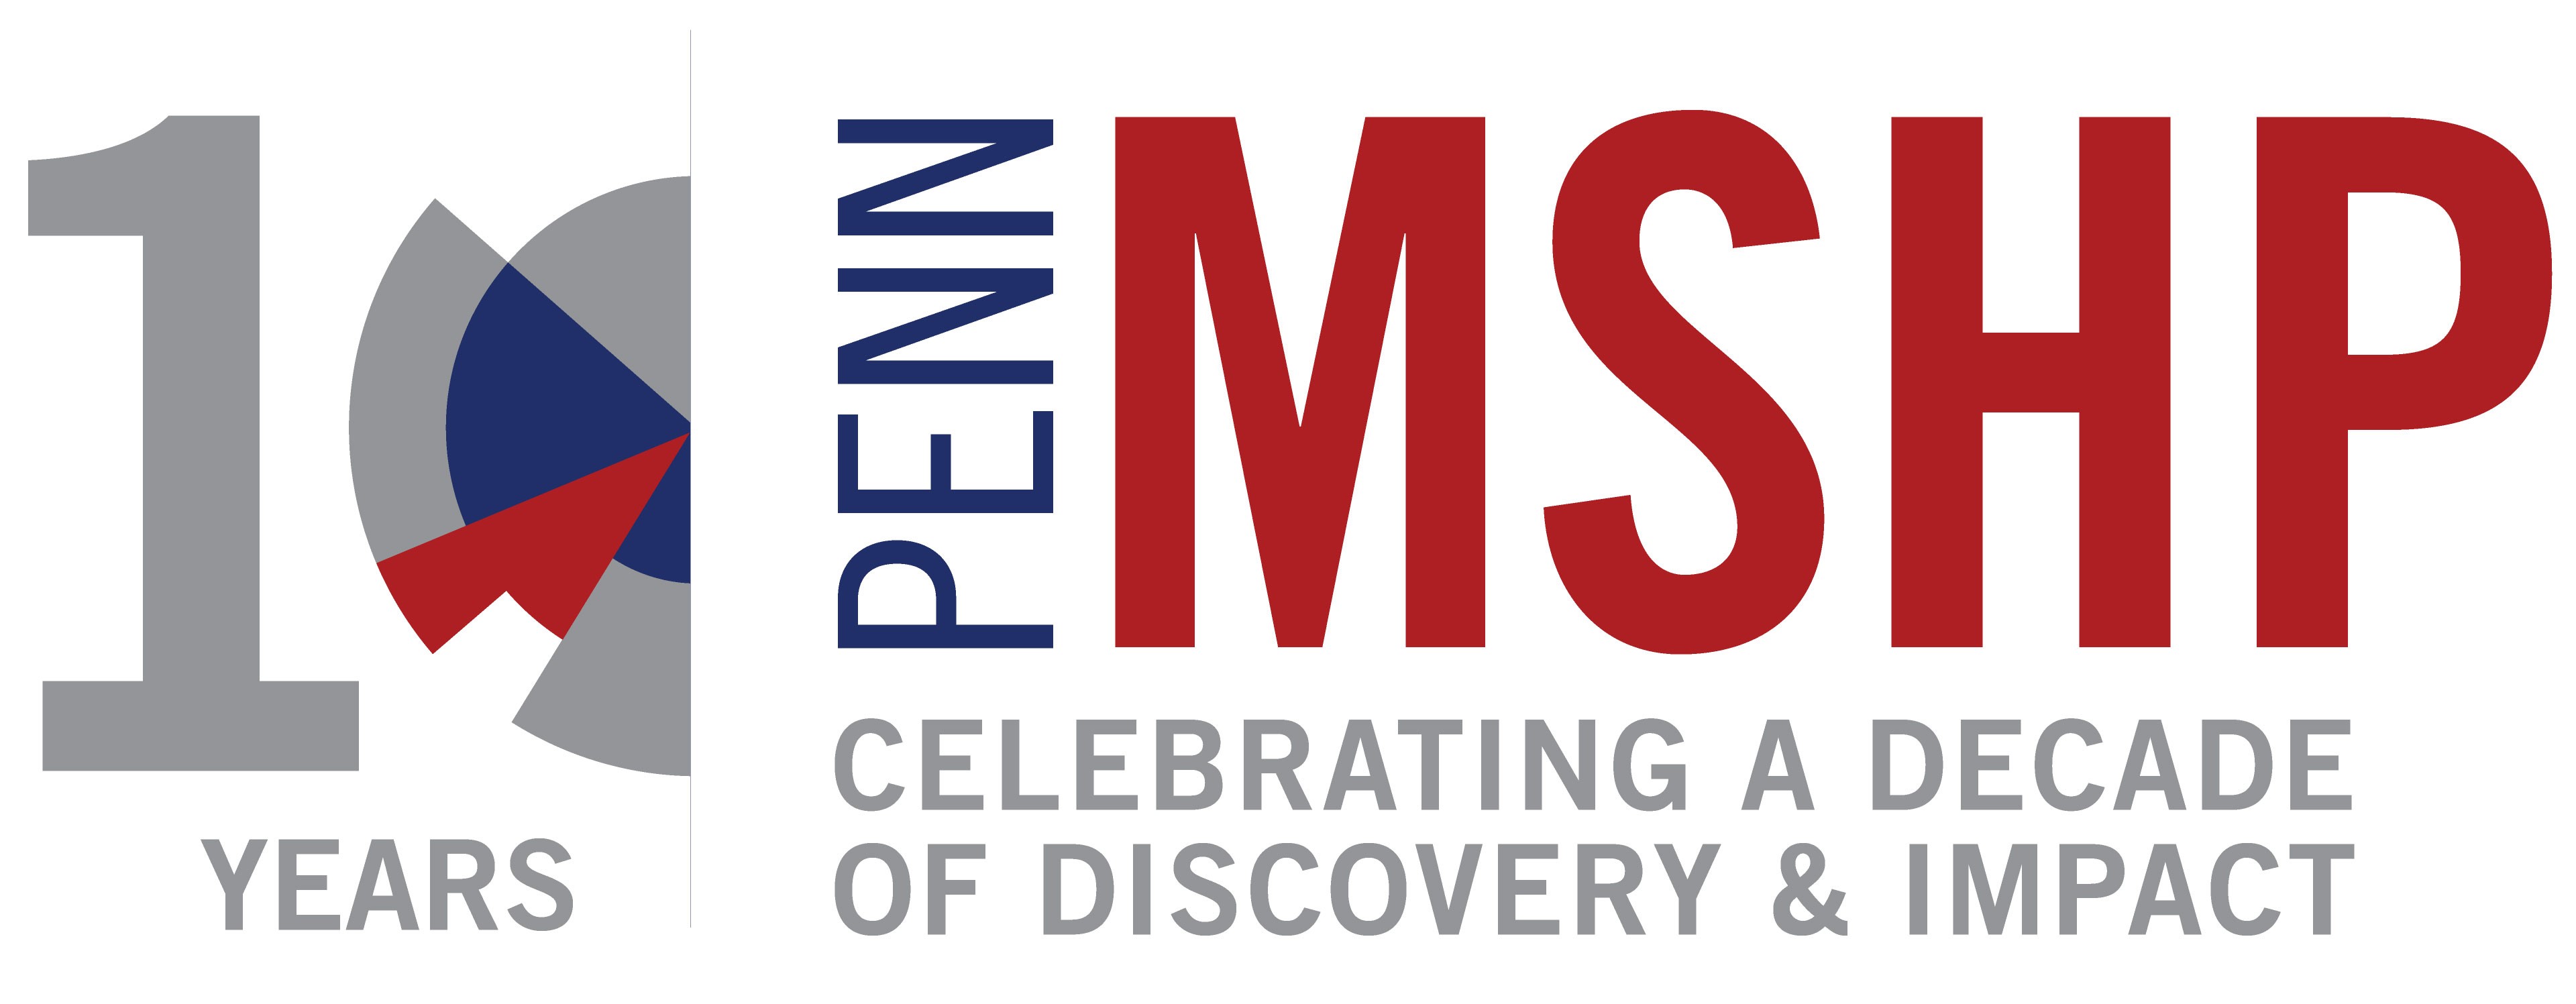 Penn MSHP logo